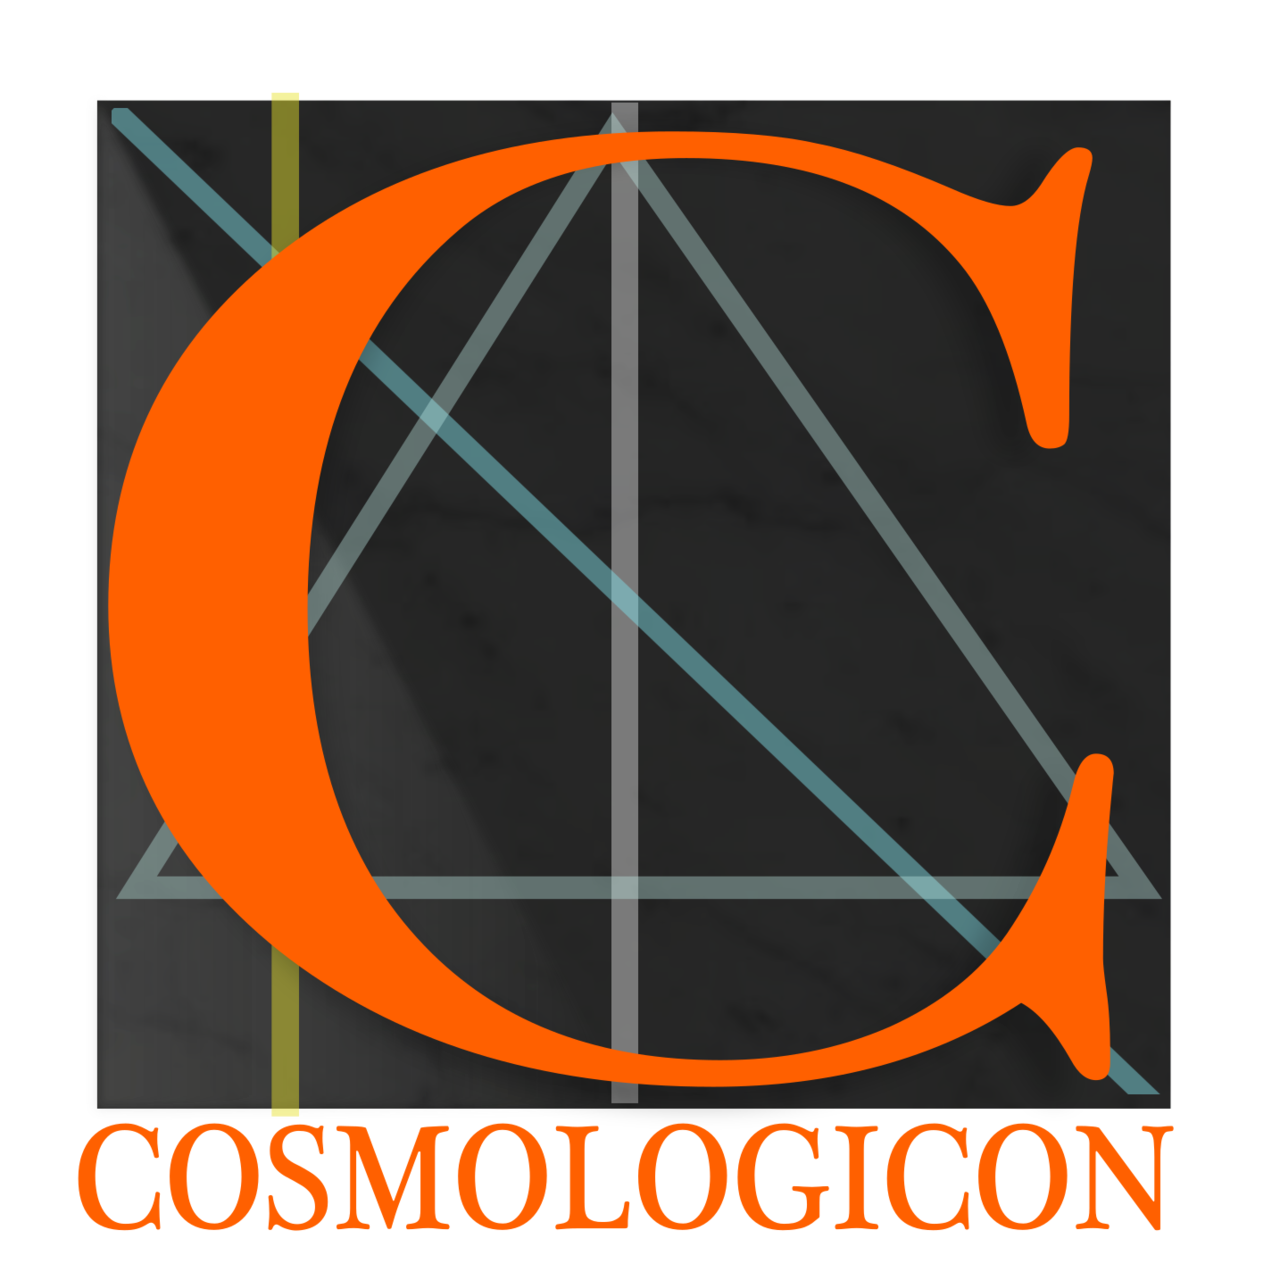 The Cosmologicon